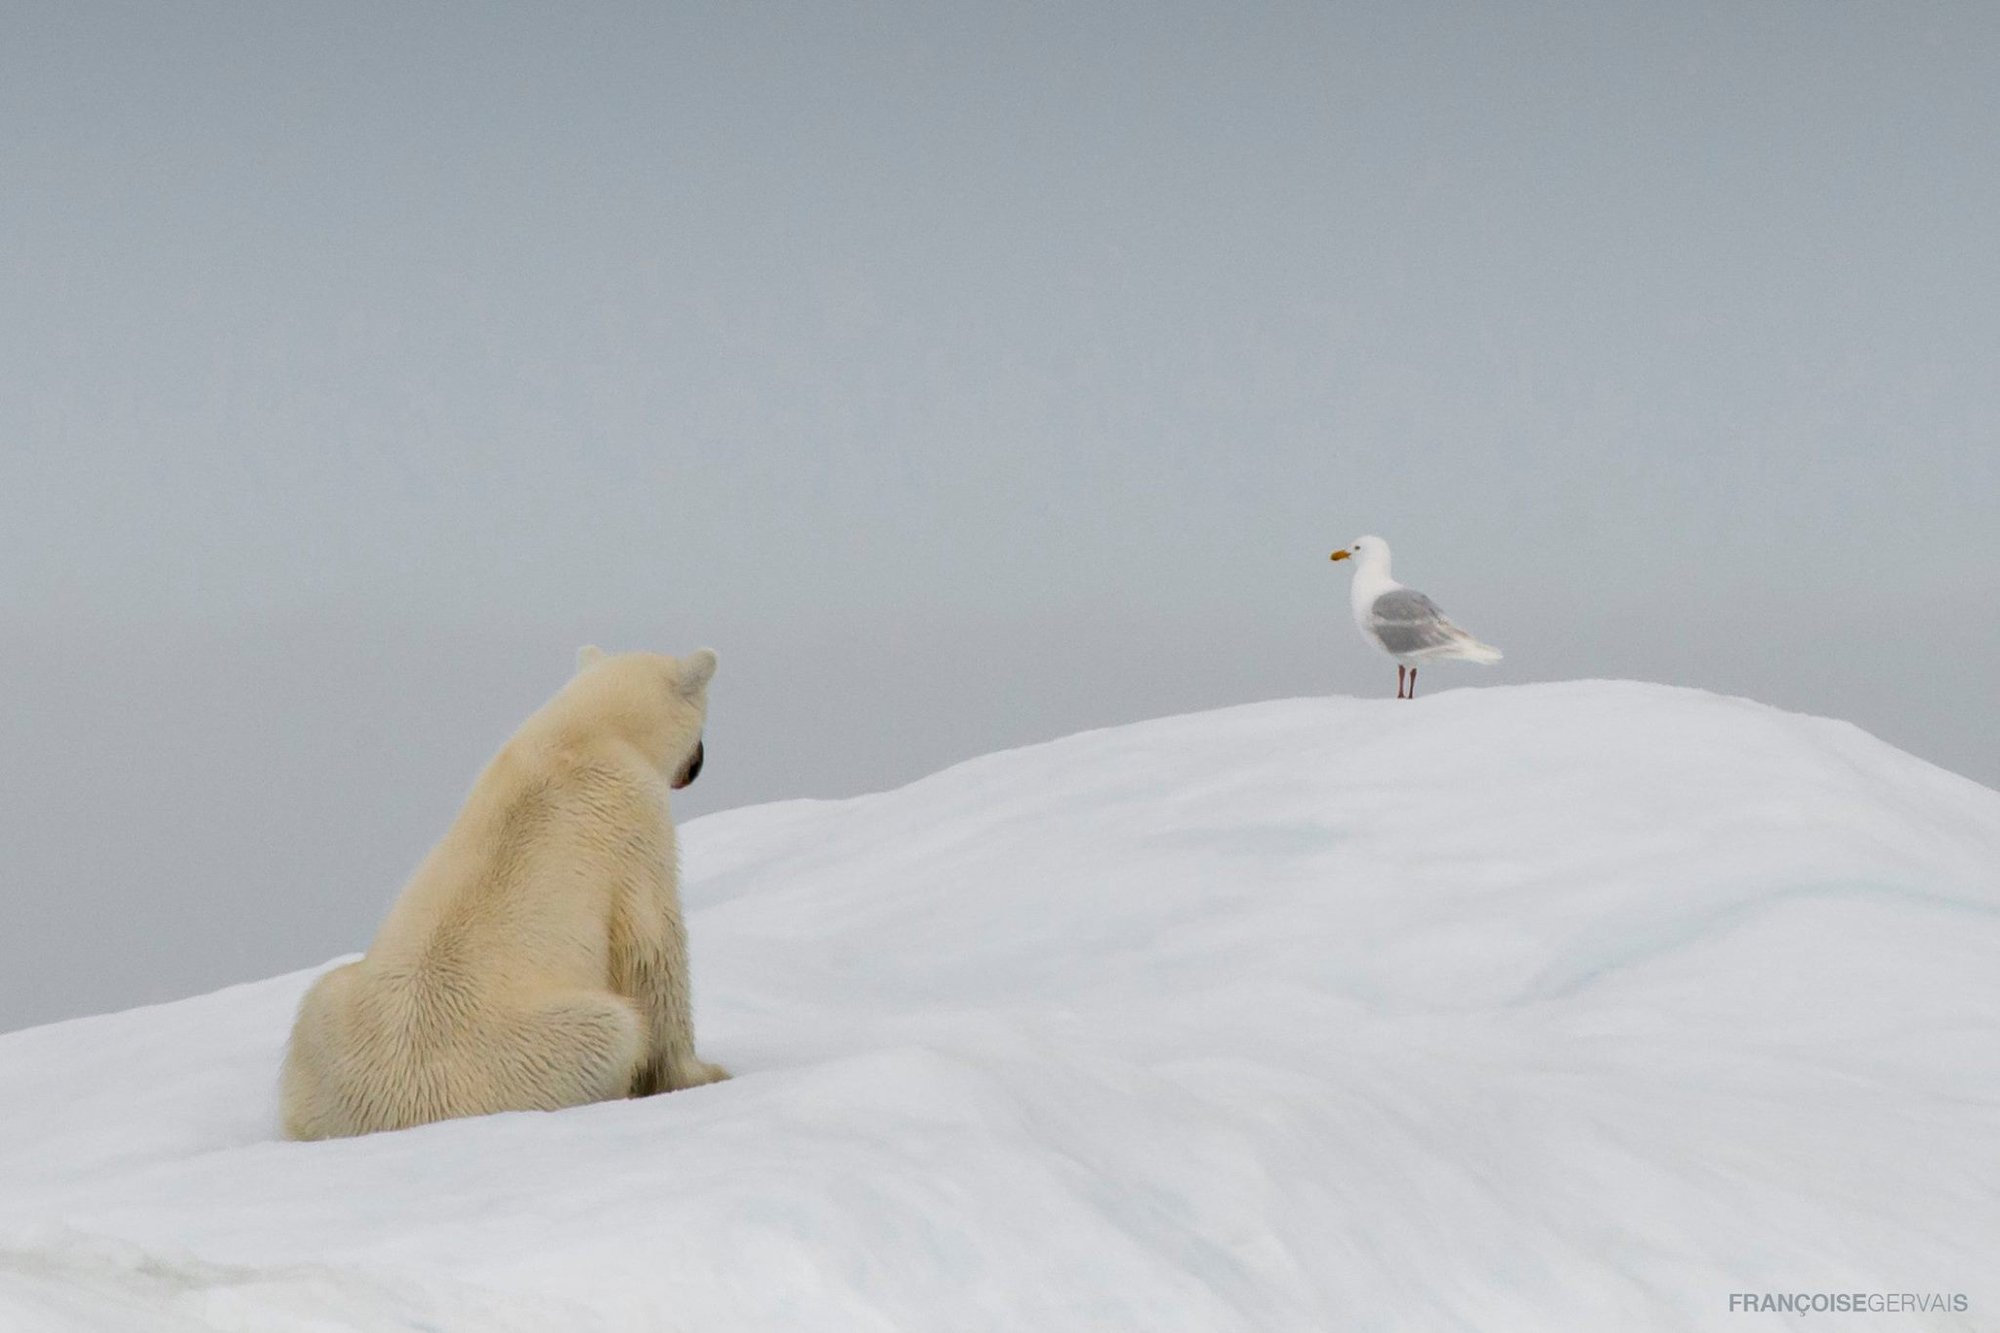 Francois Gervaise - iceberg and polar bear1